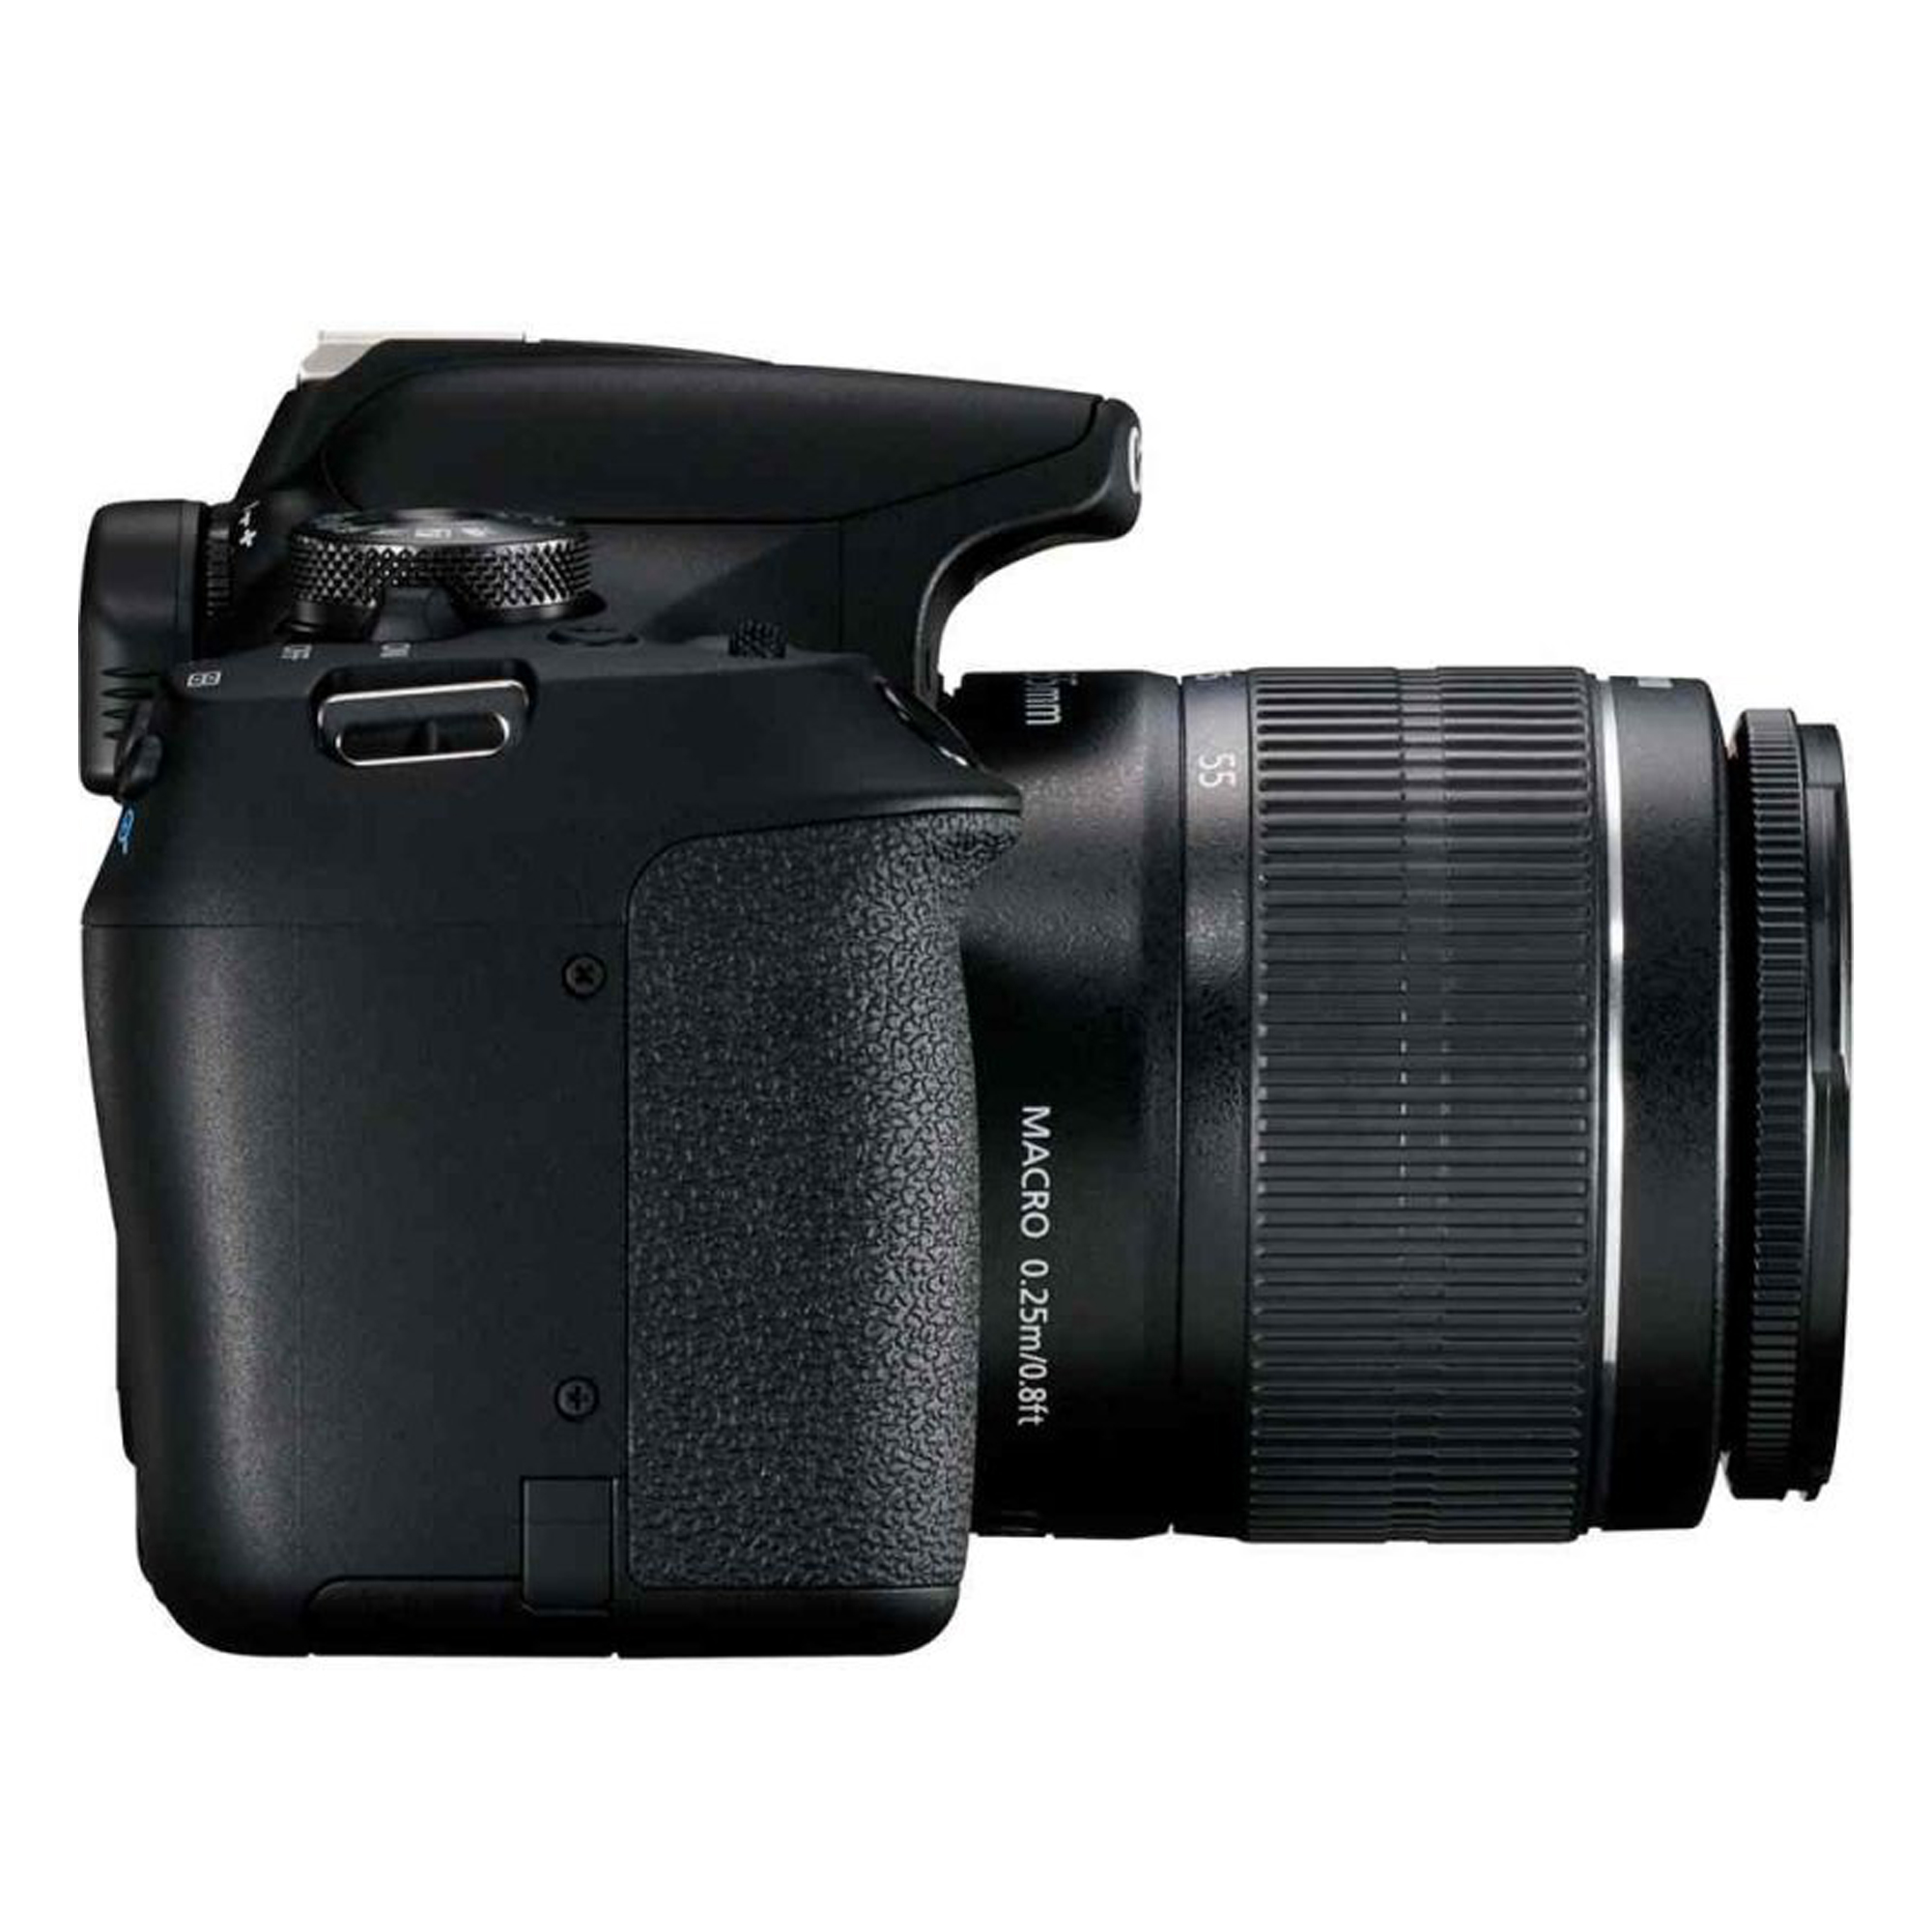 دوربین عکاسی کانن مدل EOS 2000D به همراه لنز 18-55 DC III